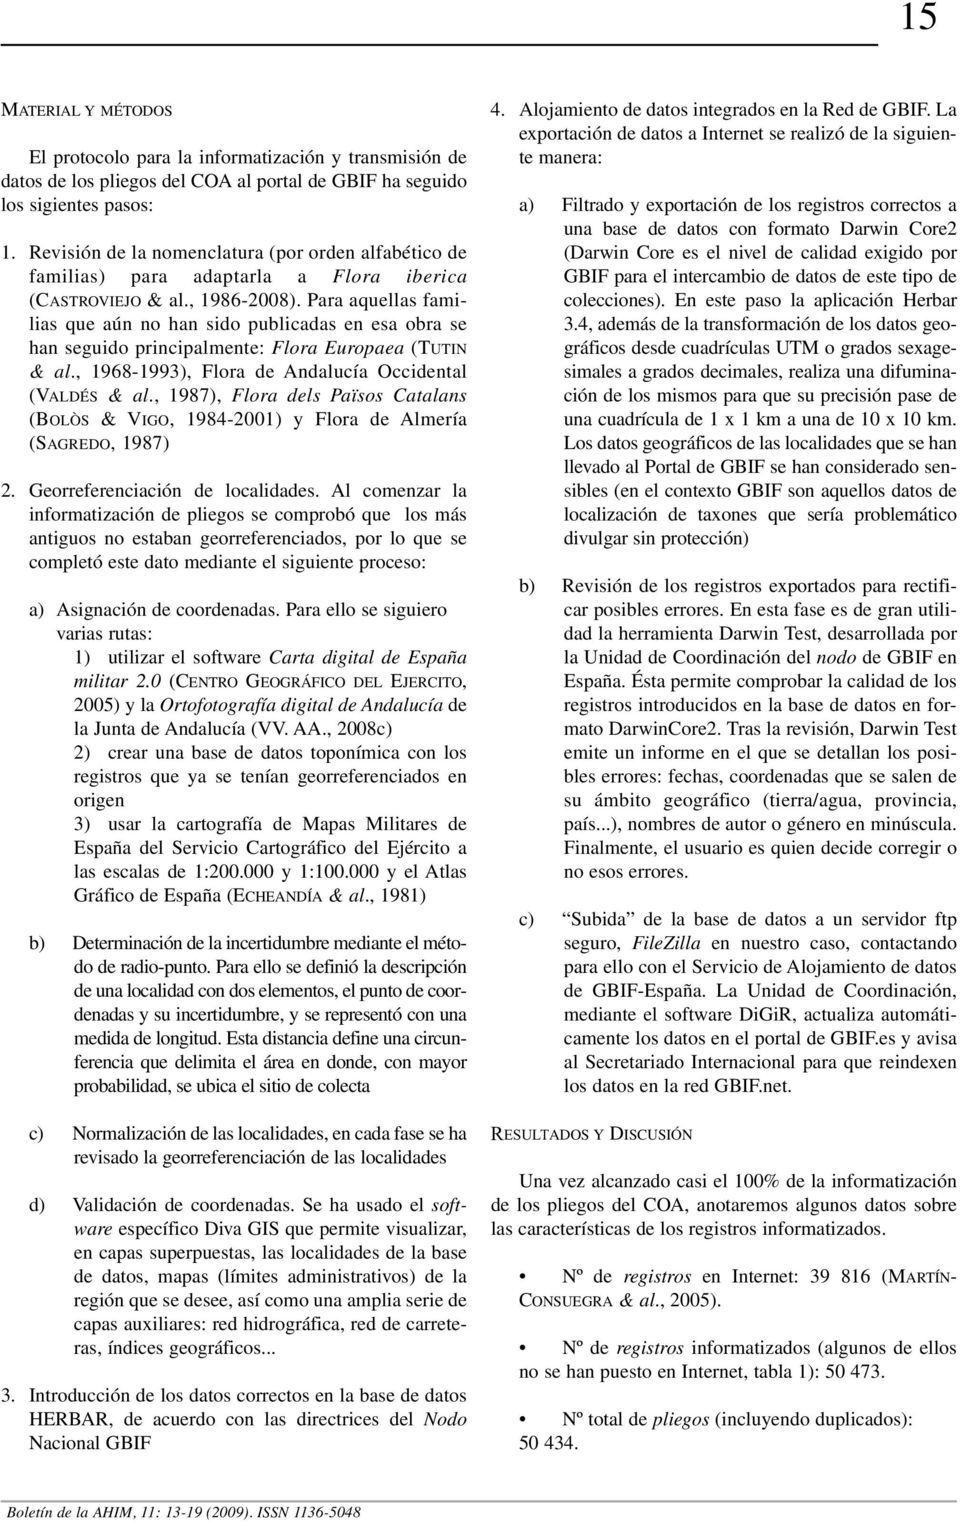 Para aquellas familias que aún no han sido publicadas en esa obra se han seguido principalmente: Flora Europaea (TUTIN & al., 1968-1993), Flora de Andalucía Occidental (VALDÉS & al.